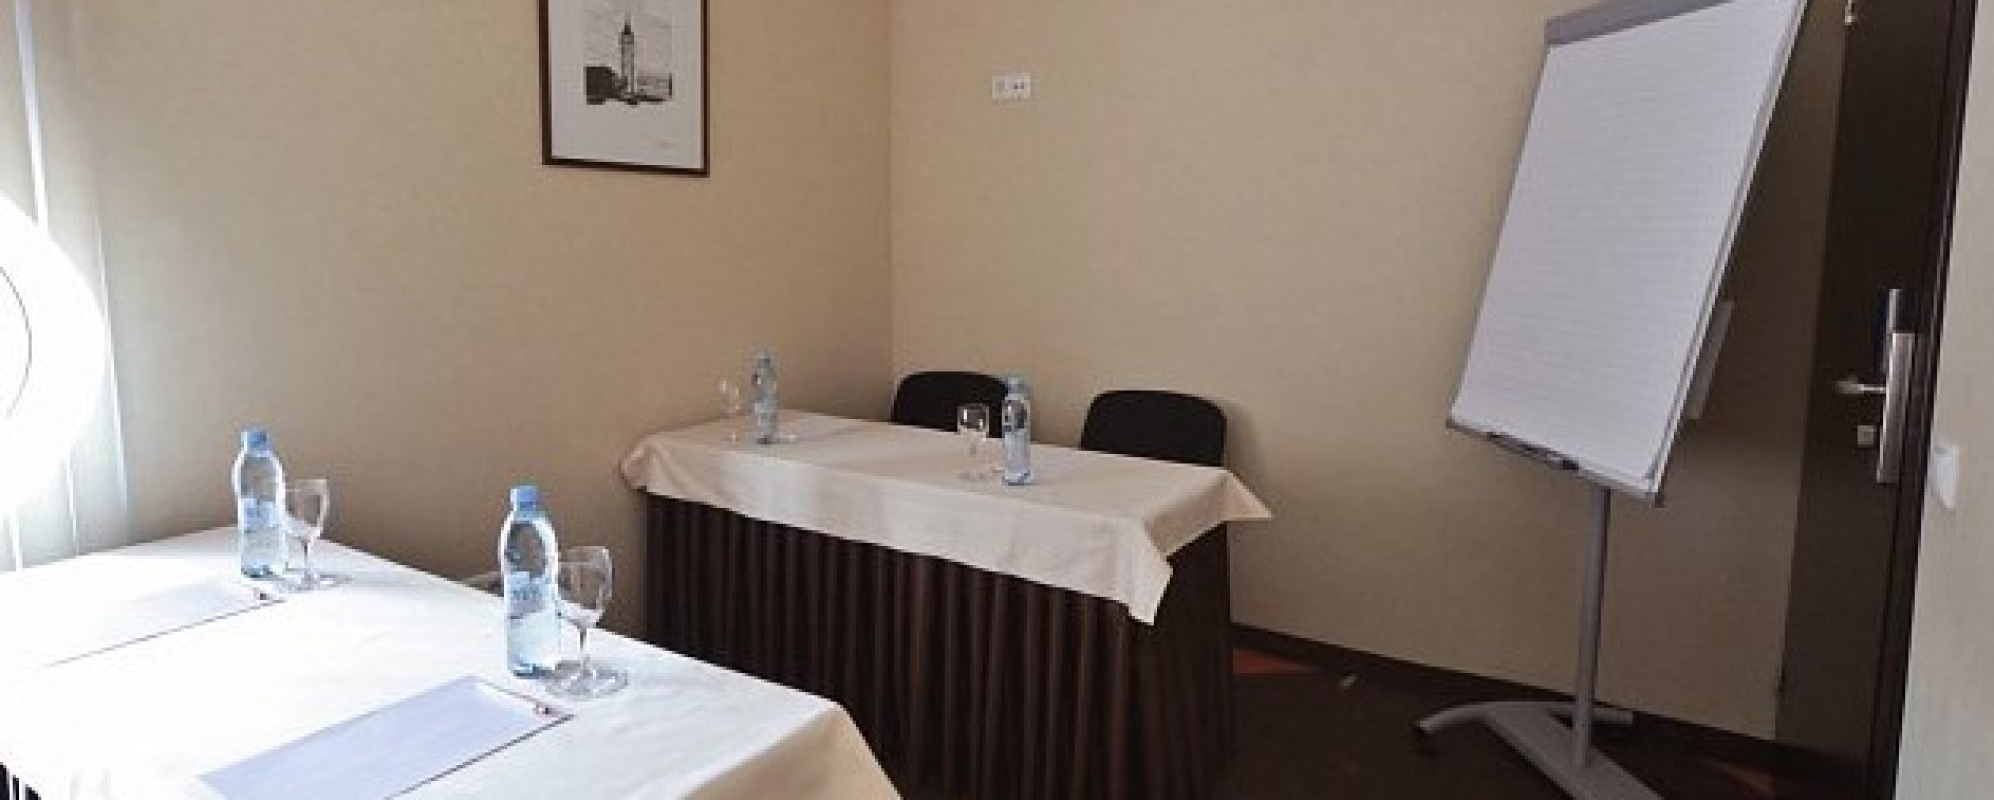 Фотографии комнаты для переговоров Павловск